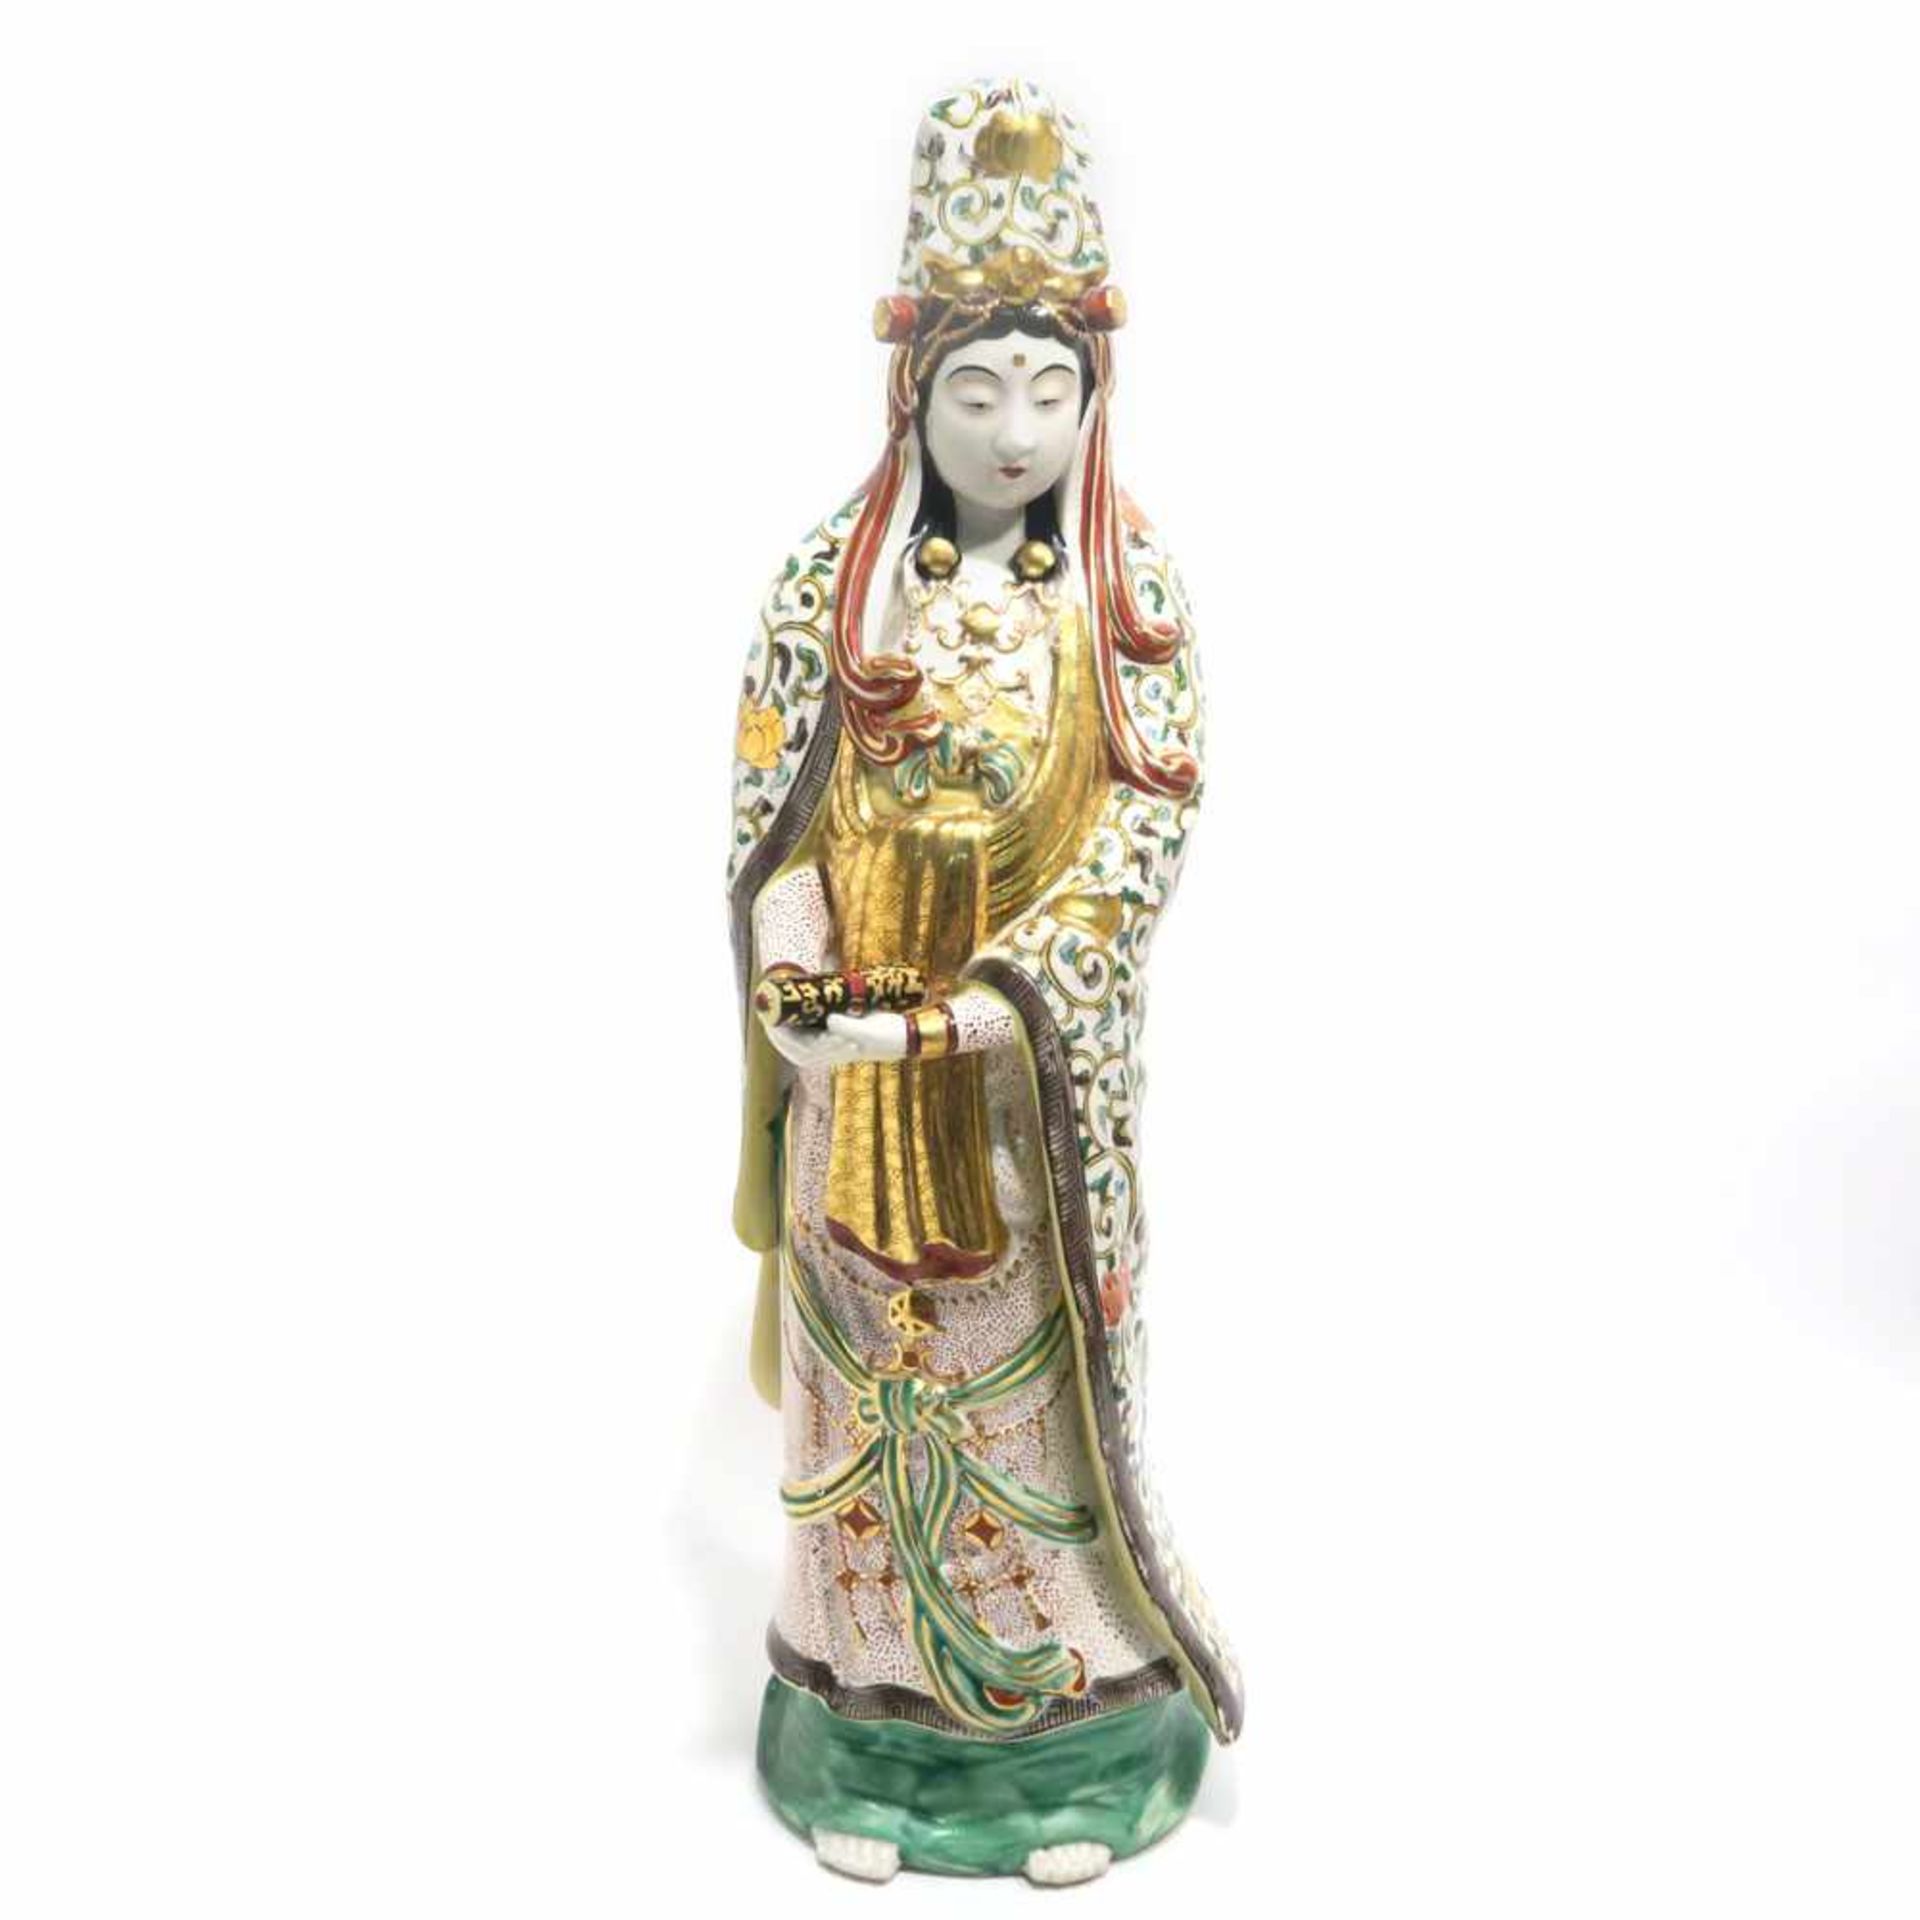 Stehende GuanyinWohl China. Keramik. Bunter Schmelzfarbendekor und Goldstaffage. Min. berieben. H.